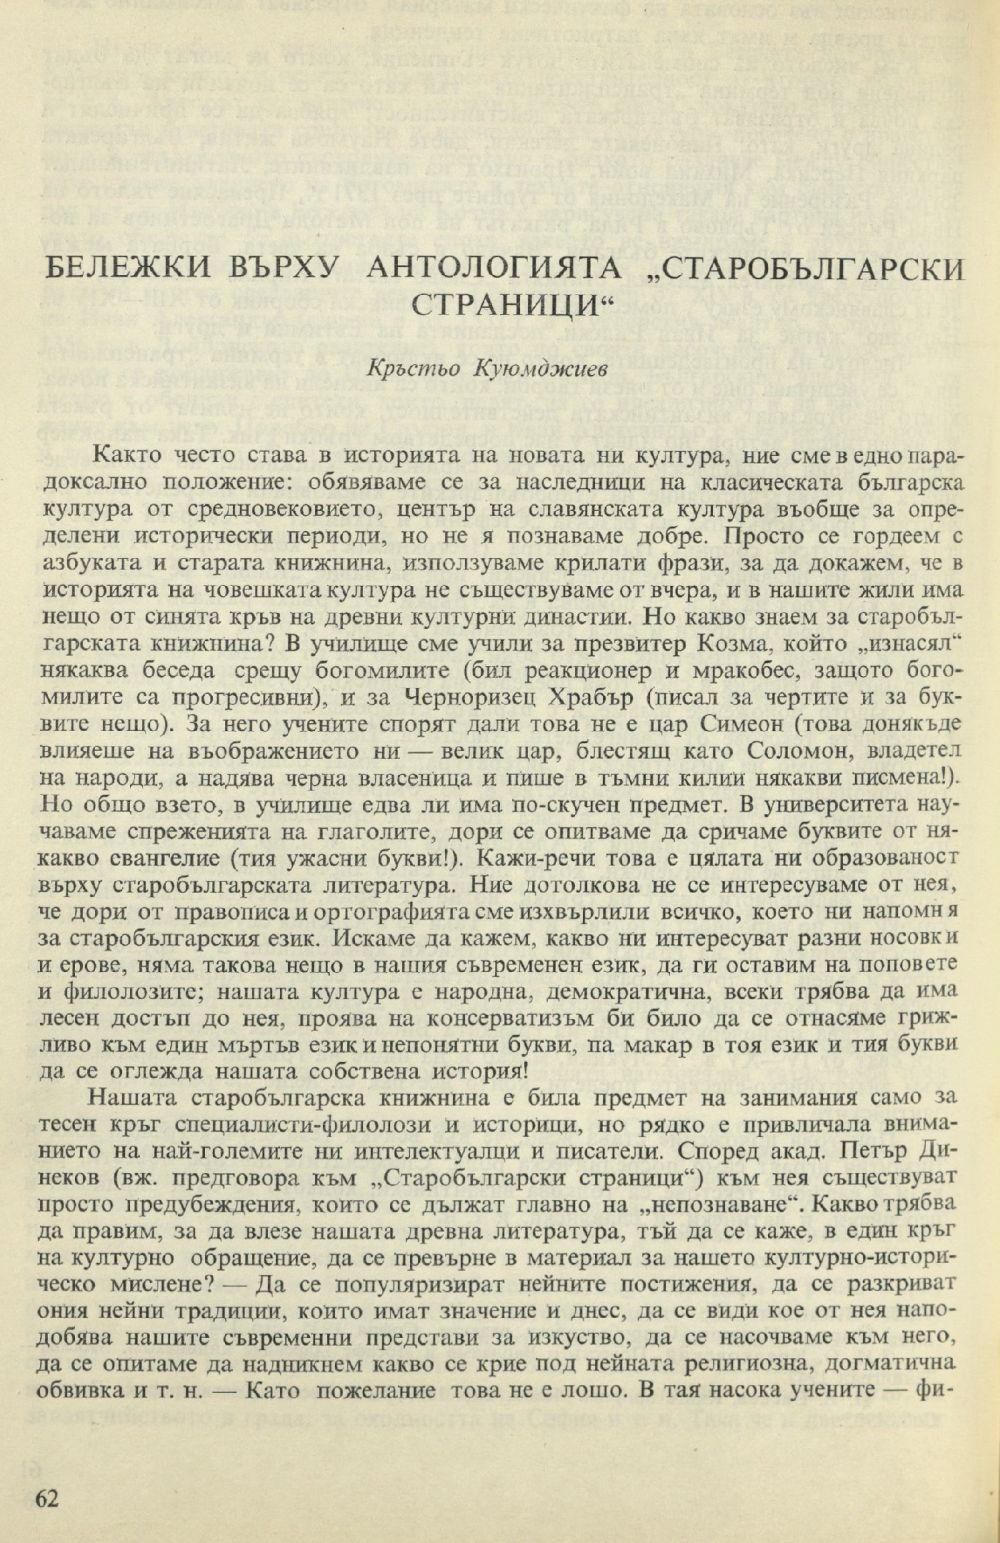 Бележки върху антологията „Старобългарски страници“ (състав. П. Динеков)